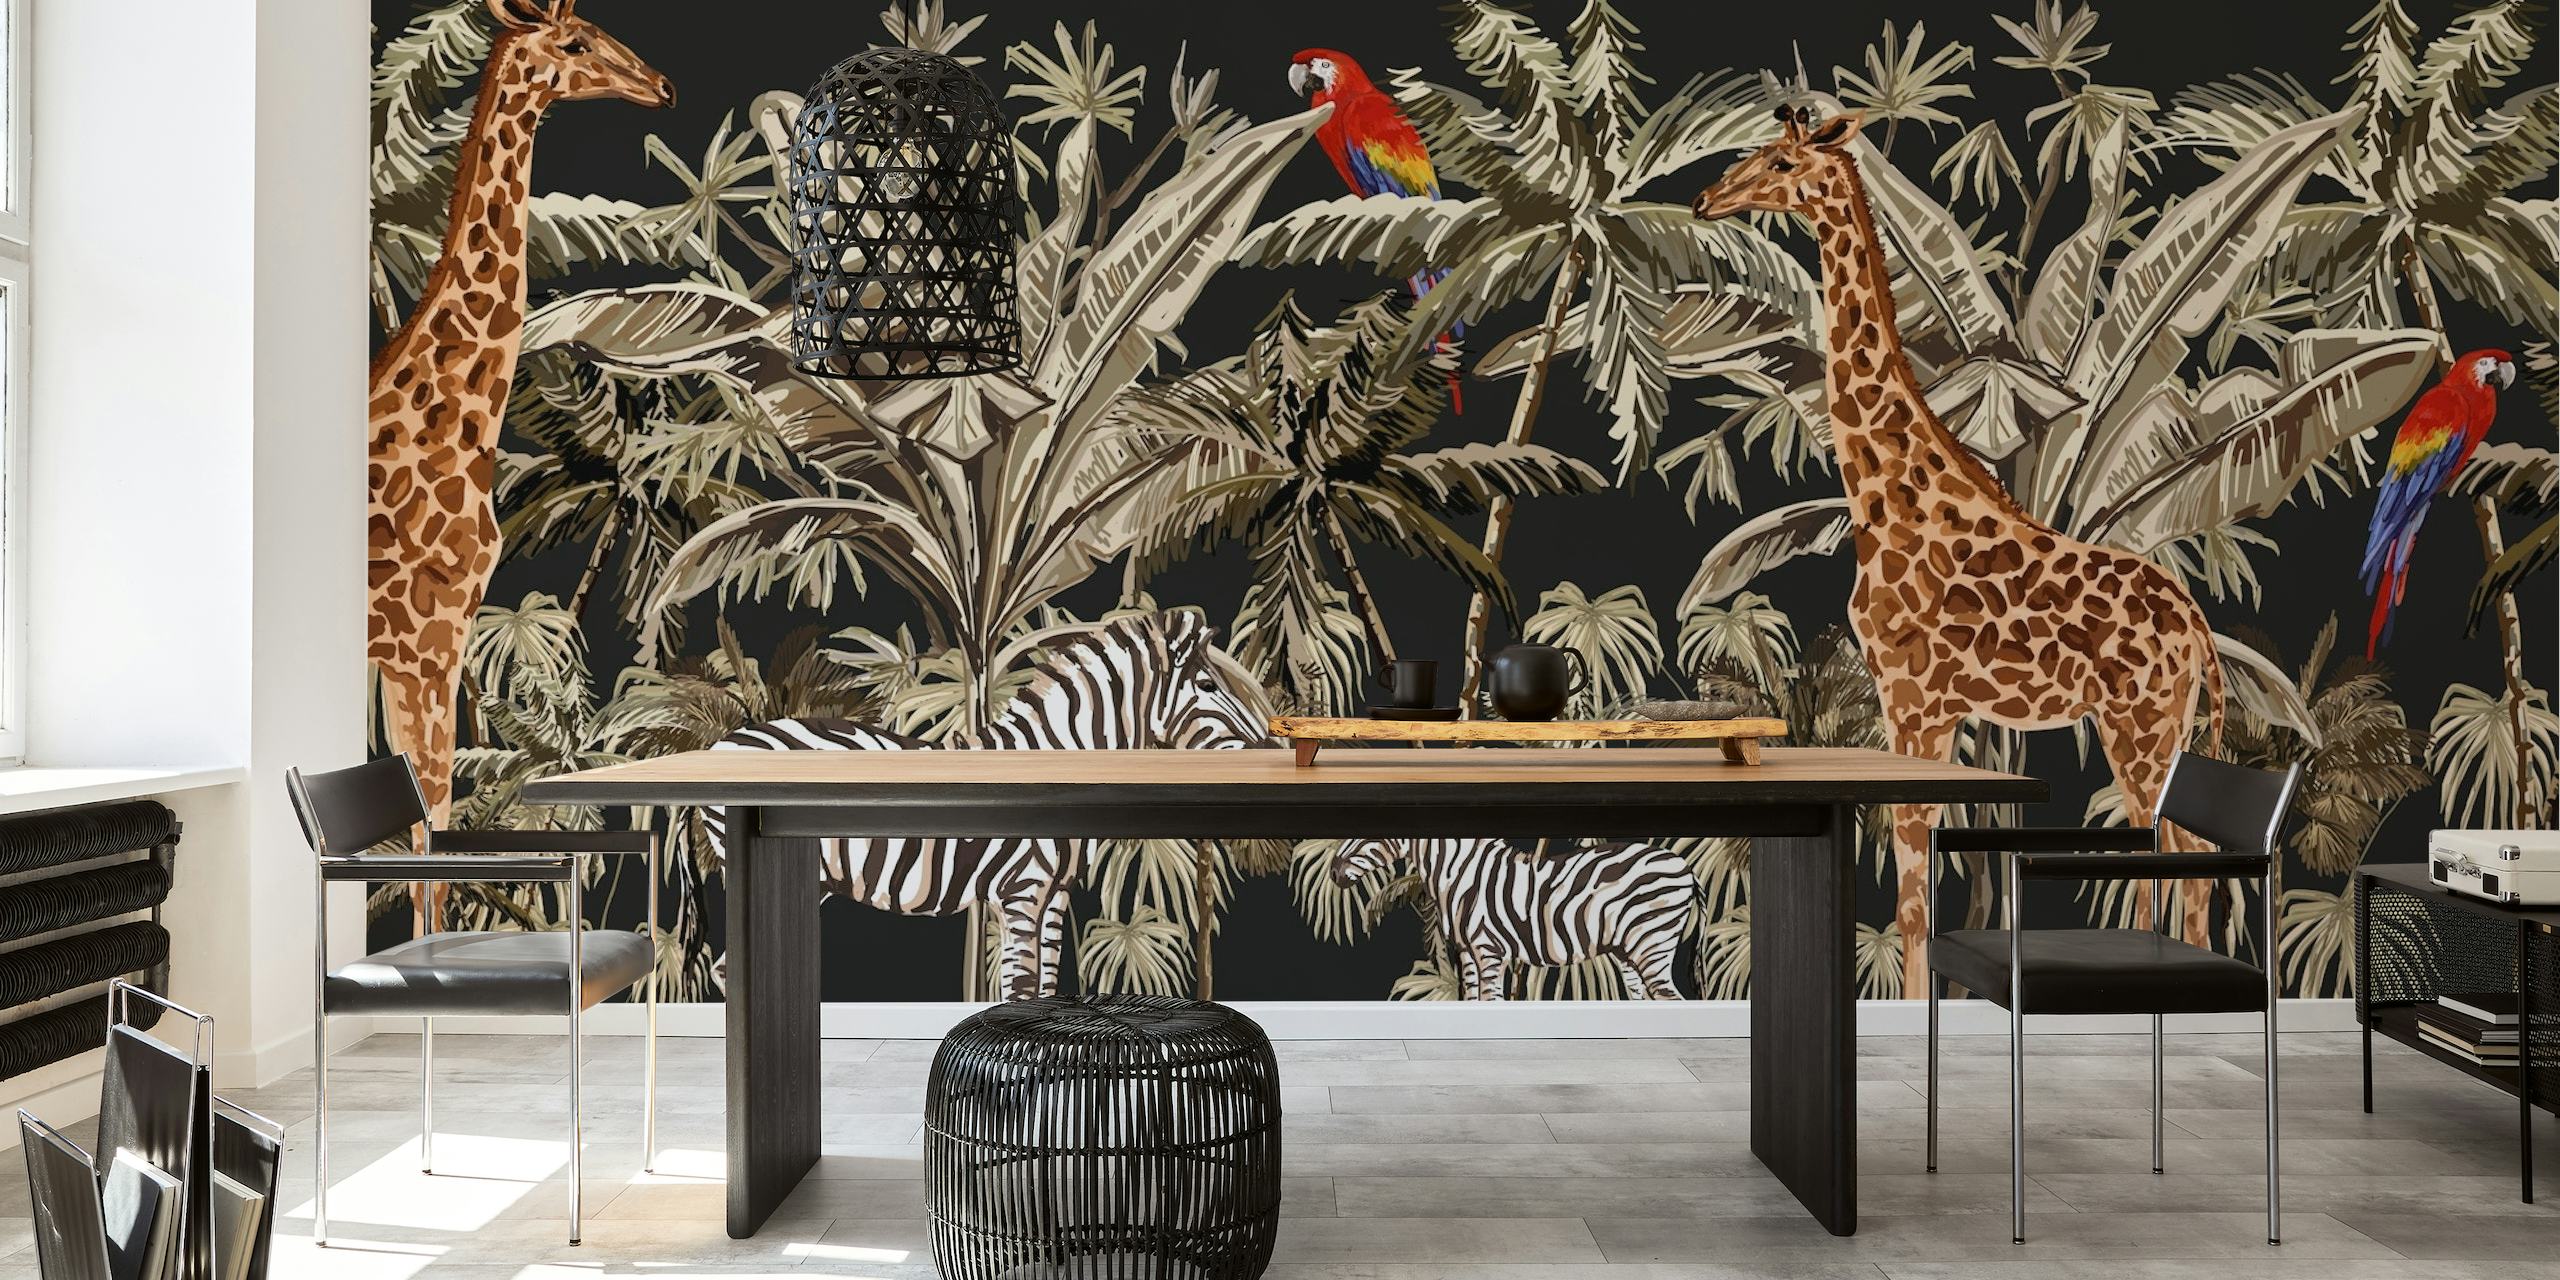 Fototapete mit Giraffen und Zebras zwischen Palmen auf schwarzem Hintergrund